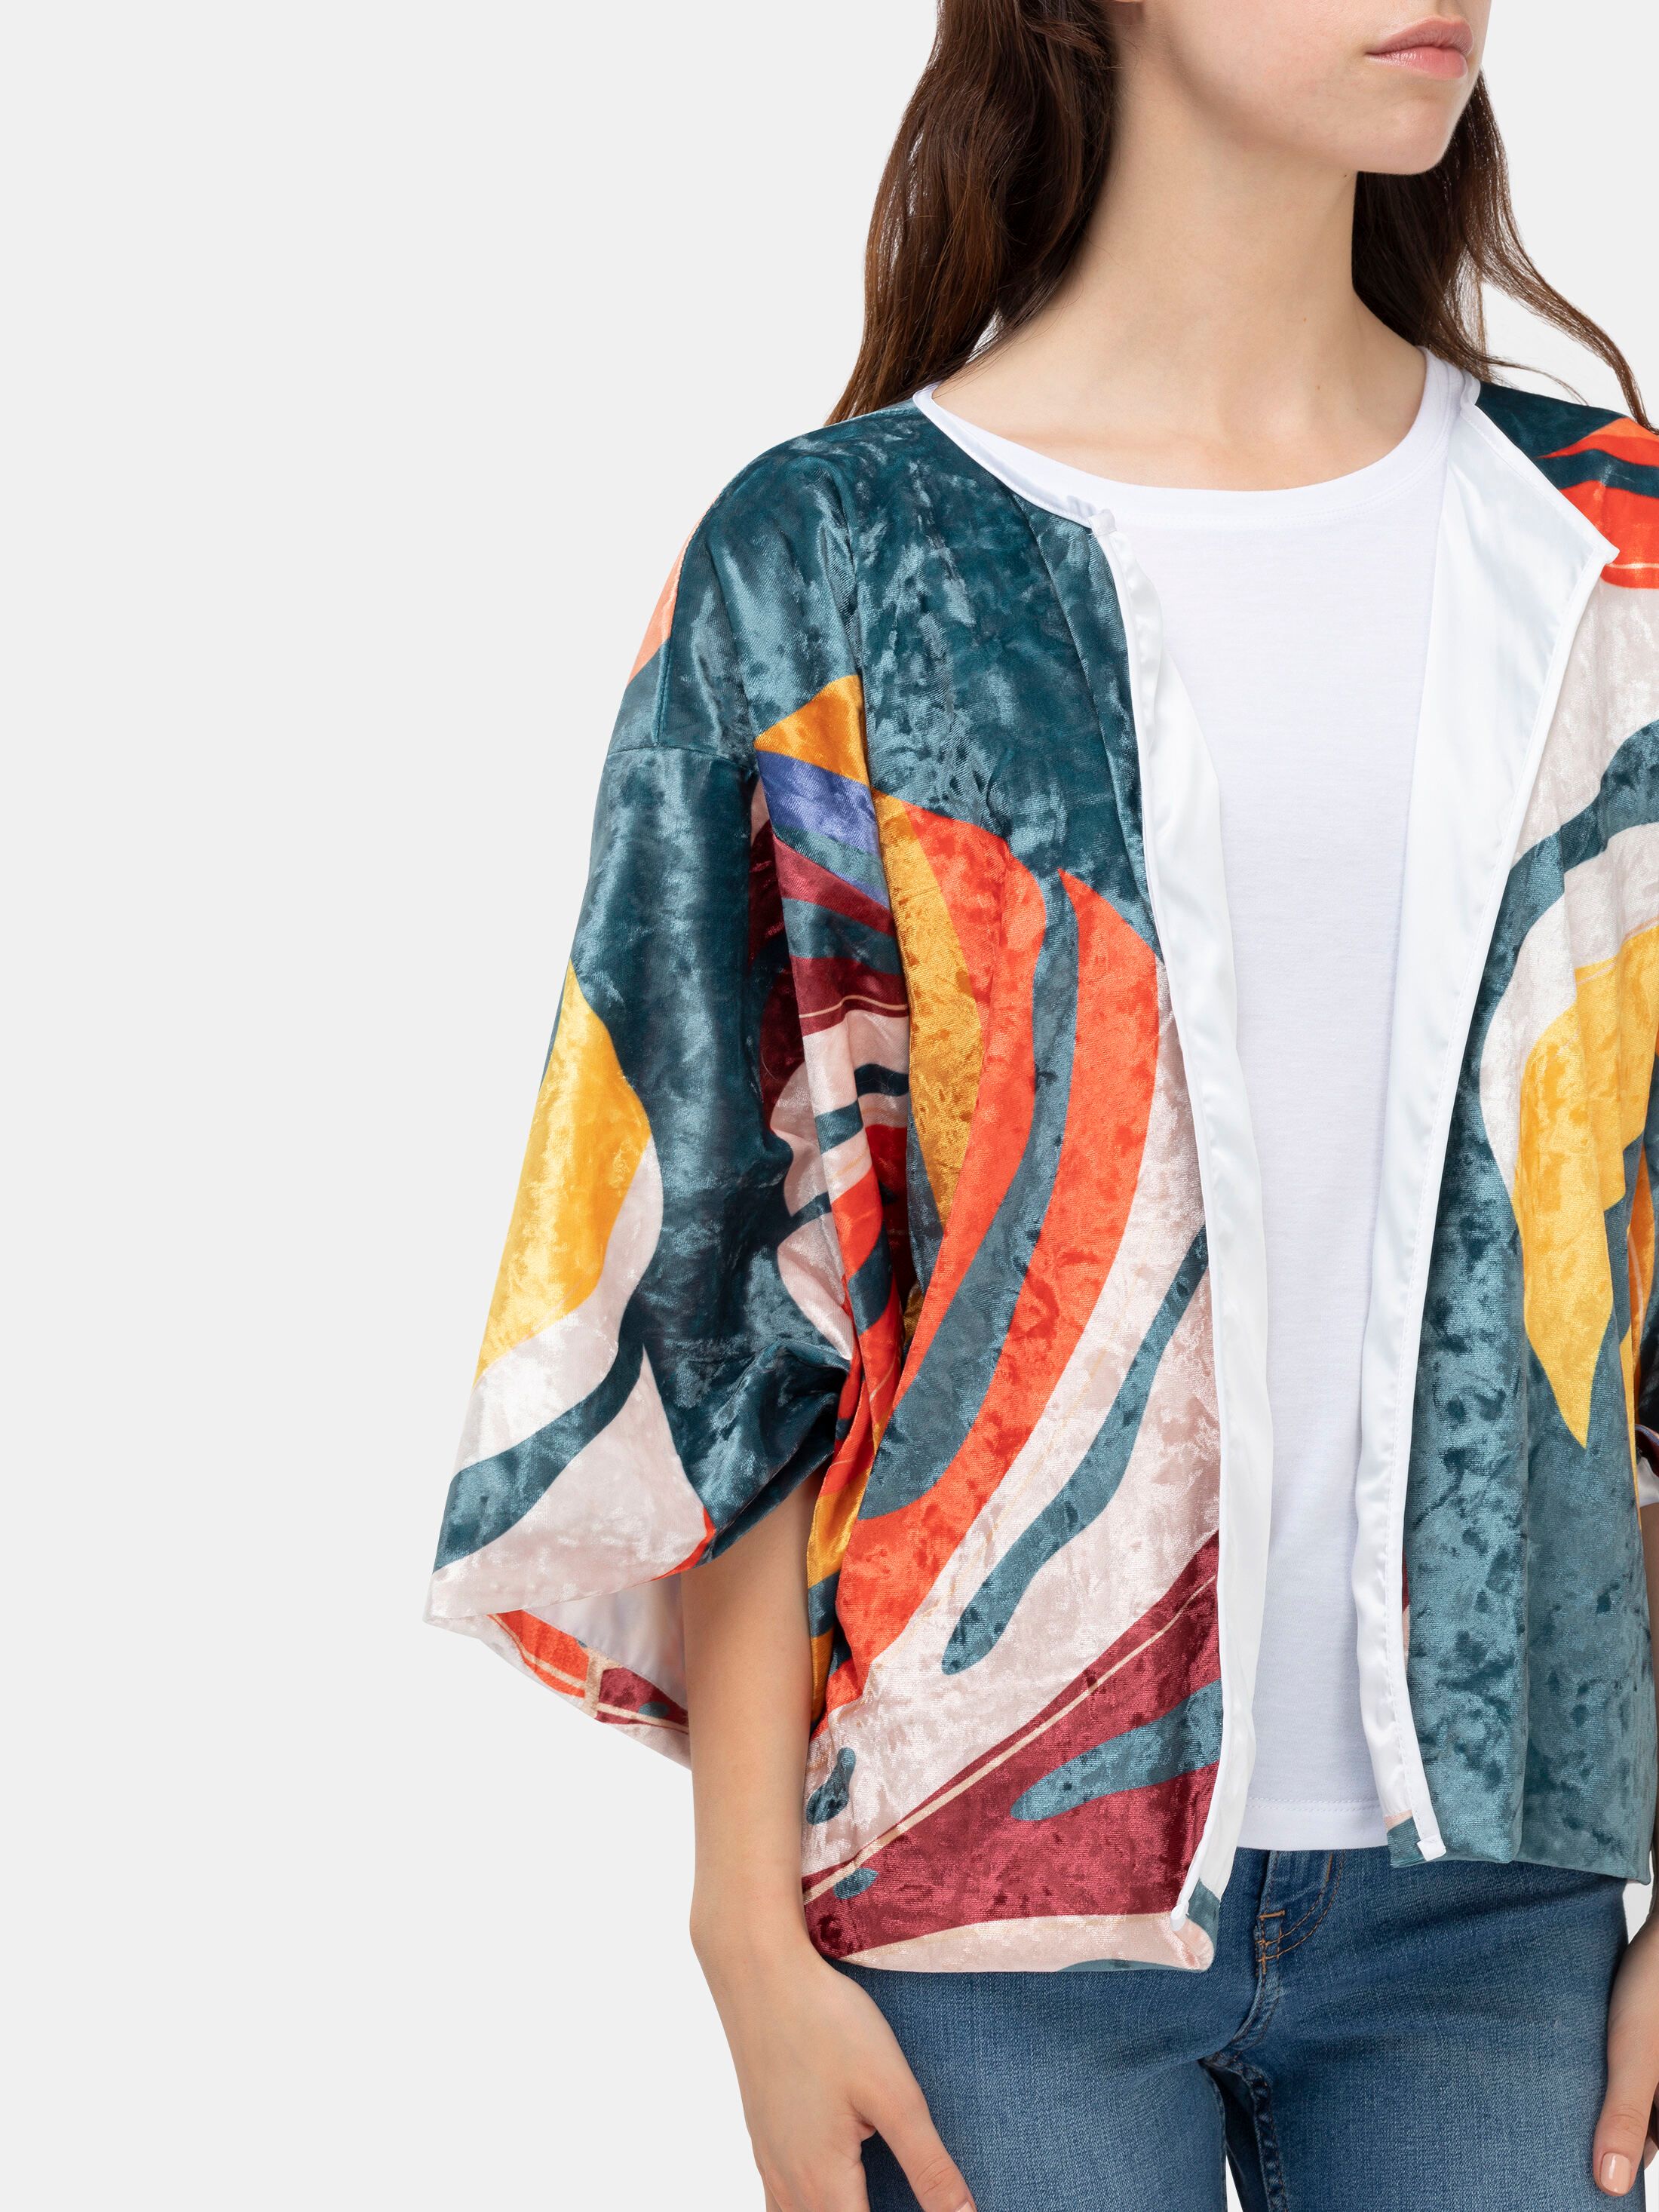 create your own kimono style blazer